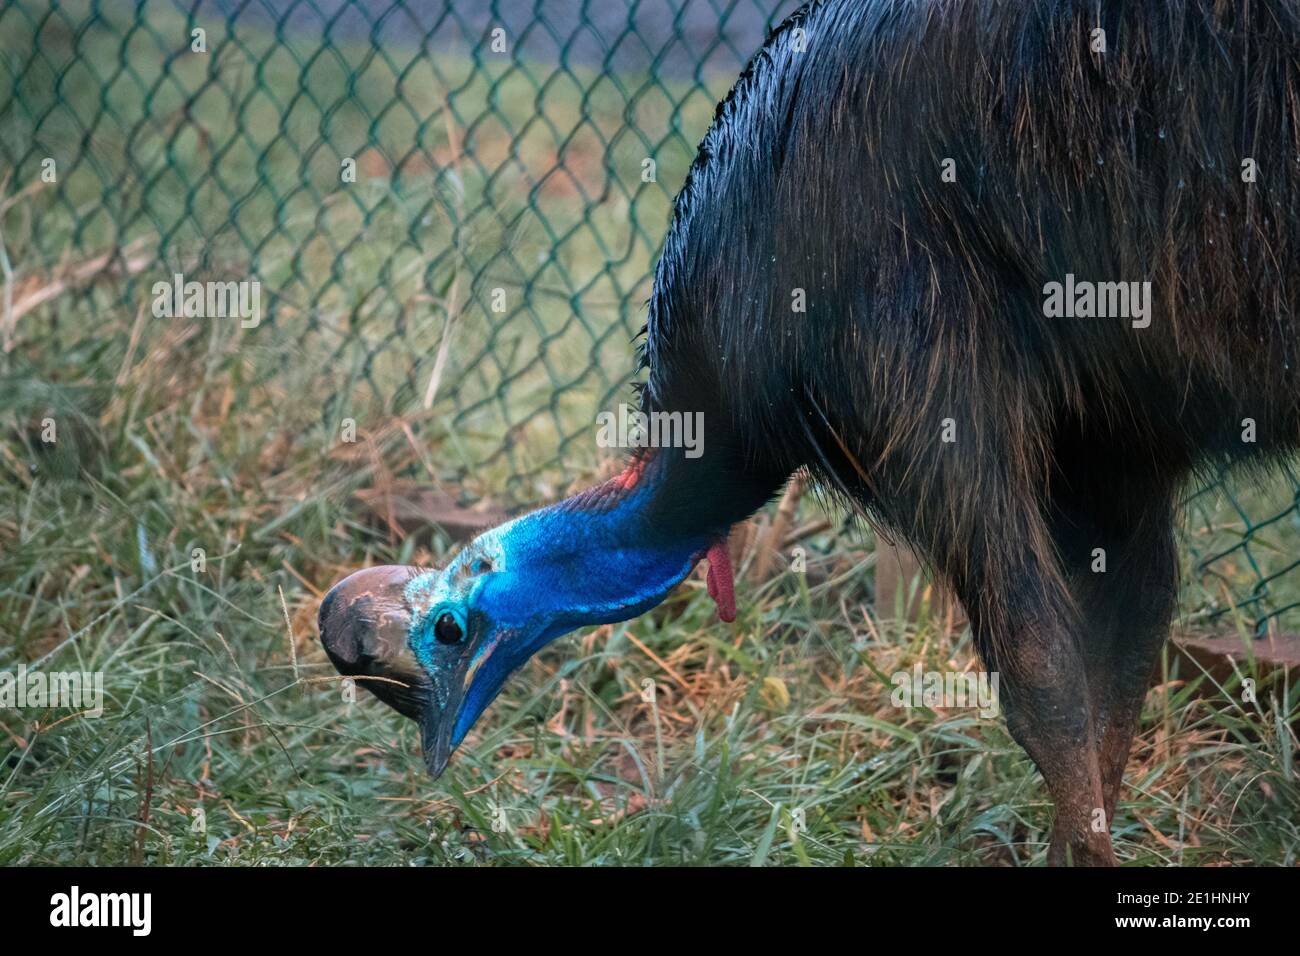 Pettinatura Cassowaria al suolo, piume bagnate lucide, collo lungo di colore blu brillante. Foto Stock